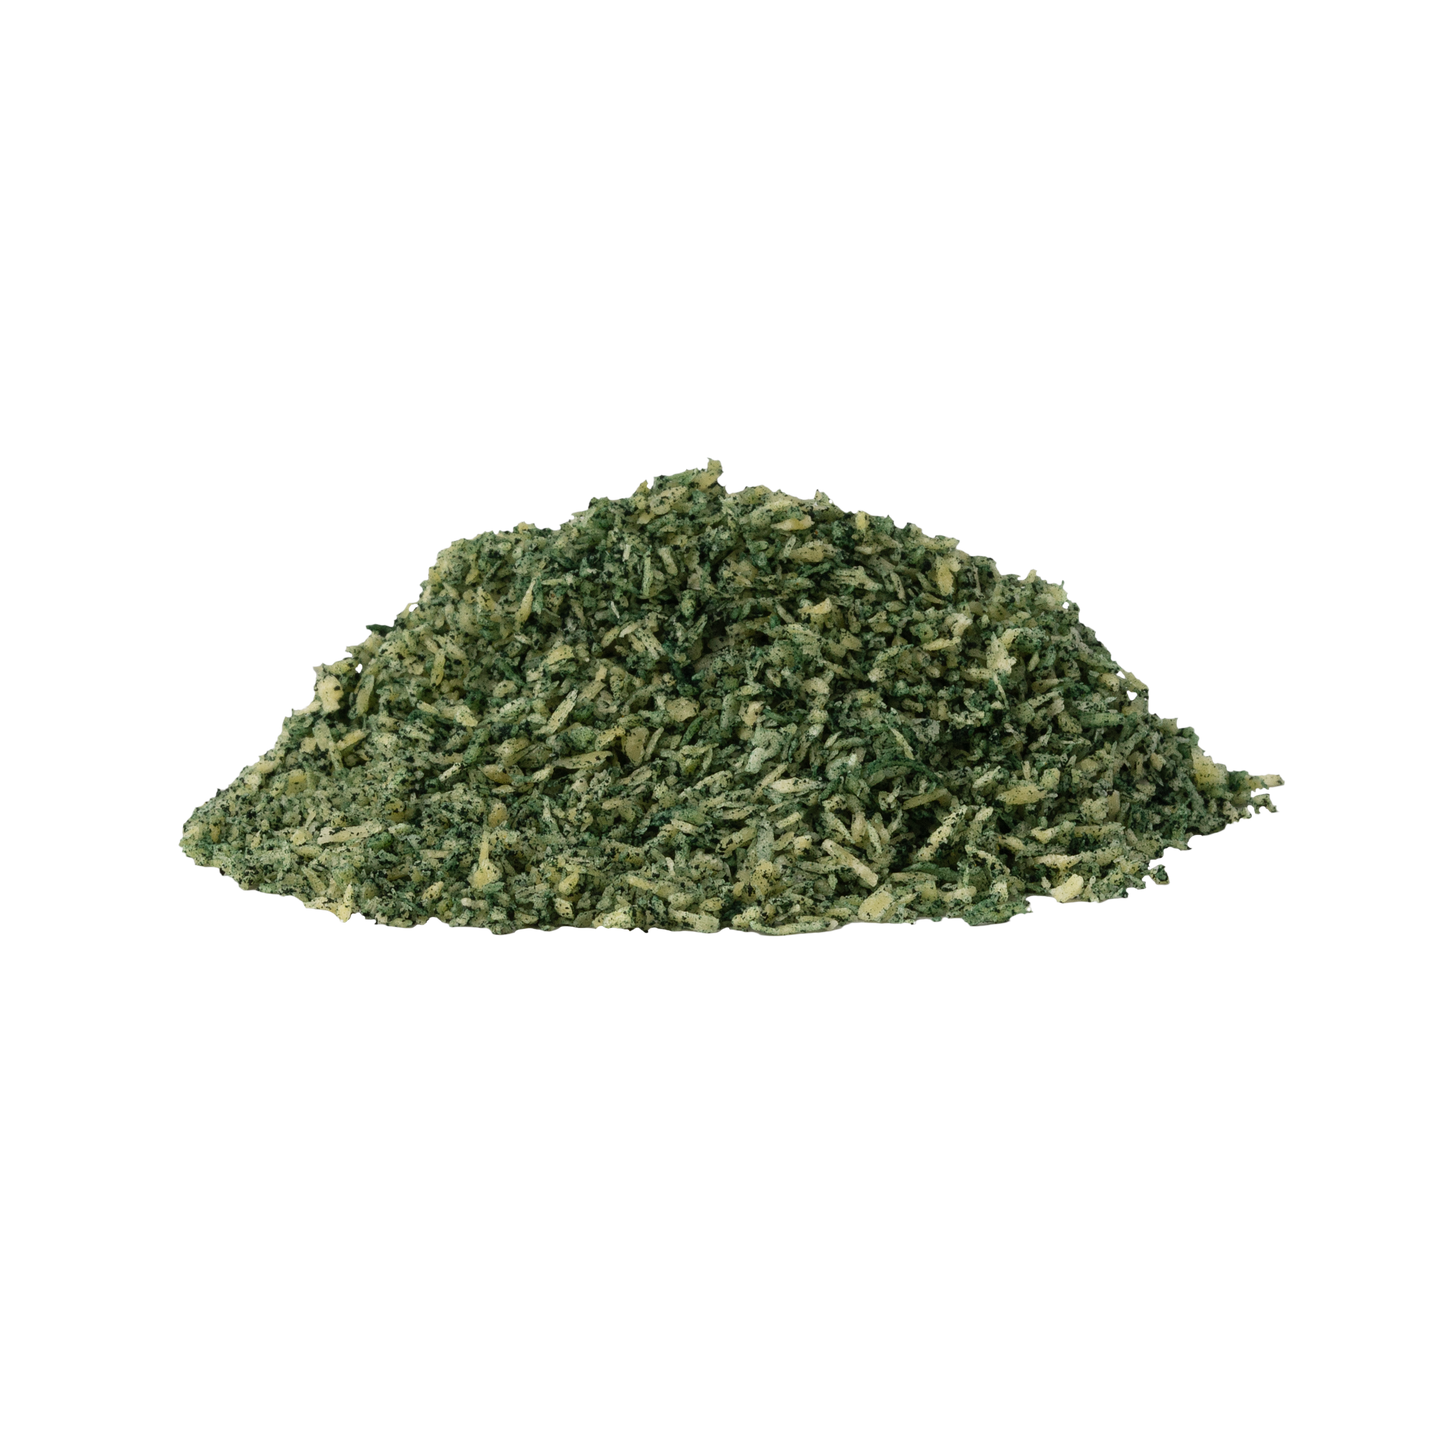 Magic Dust appetizzante in polvere per Cani e Gatti gusto Emerald Paste (Kg/Size: 0,65)